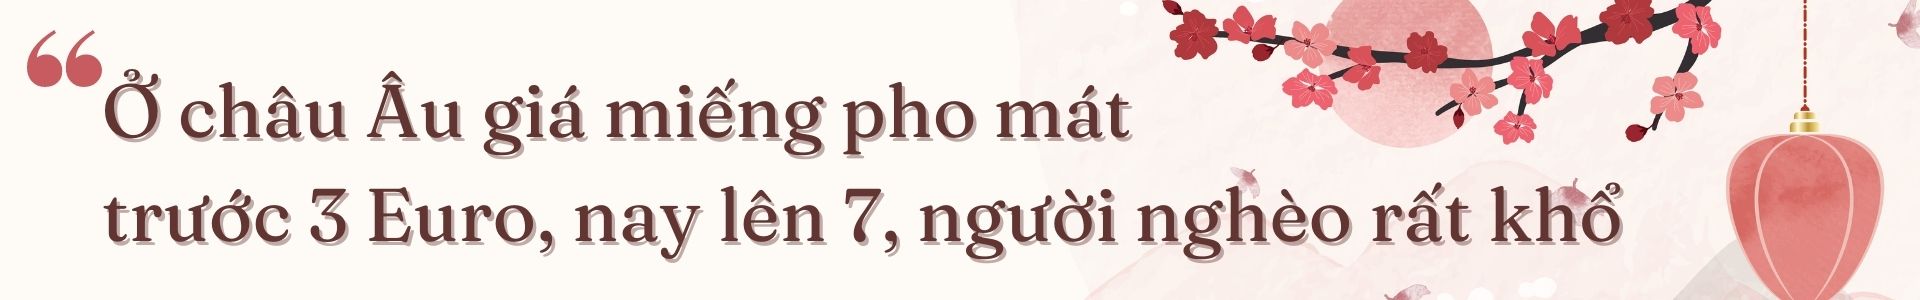 Nhà thơ Dạ Thảo Phương: Mong đến Tết để cùng con gái bày mâm ngũ quả - Ảnh 6.